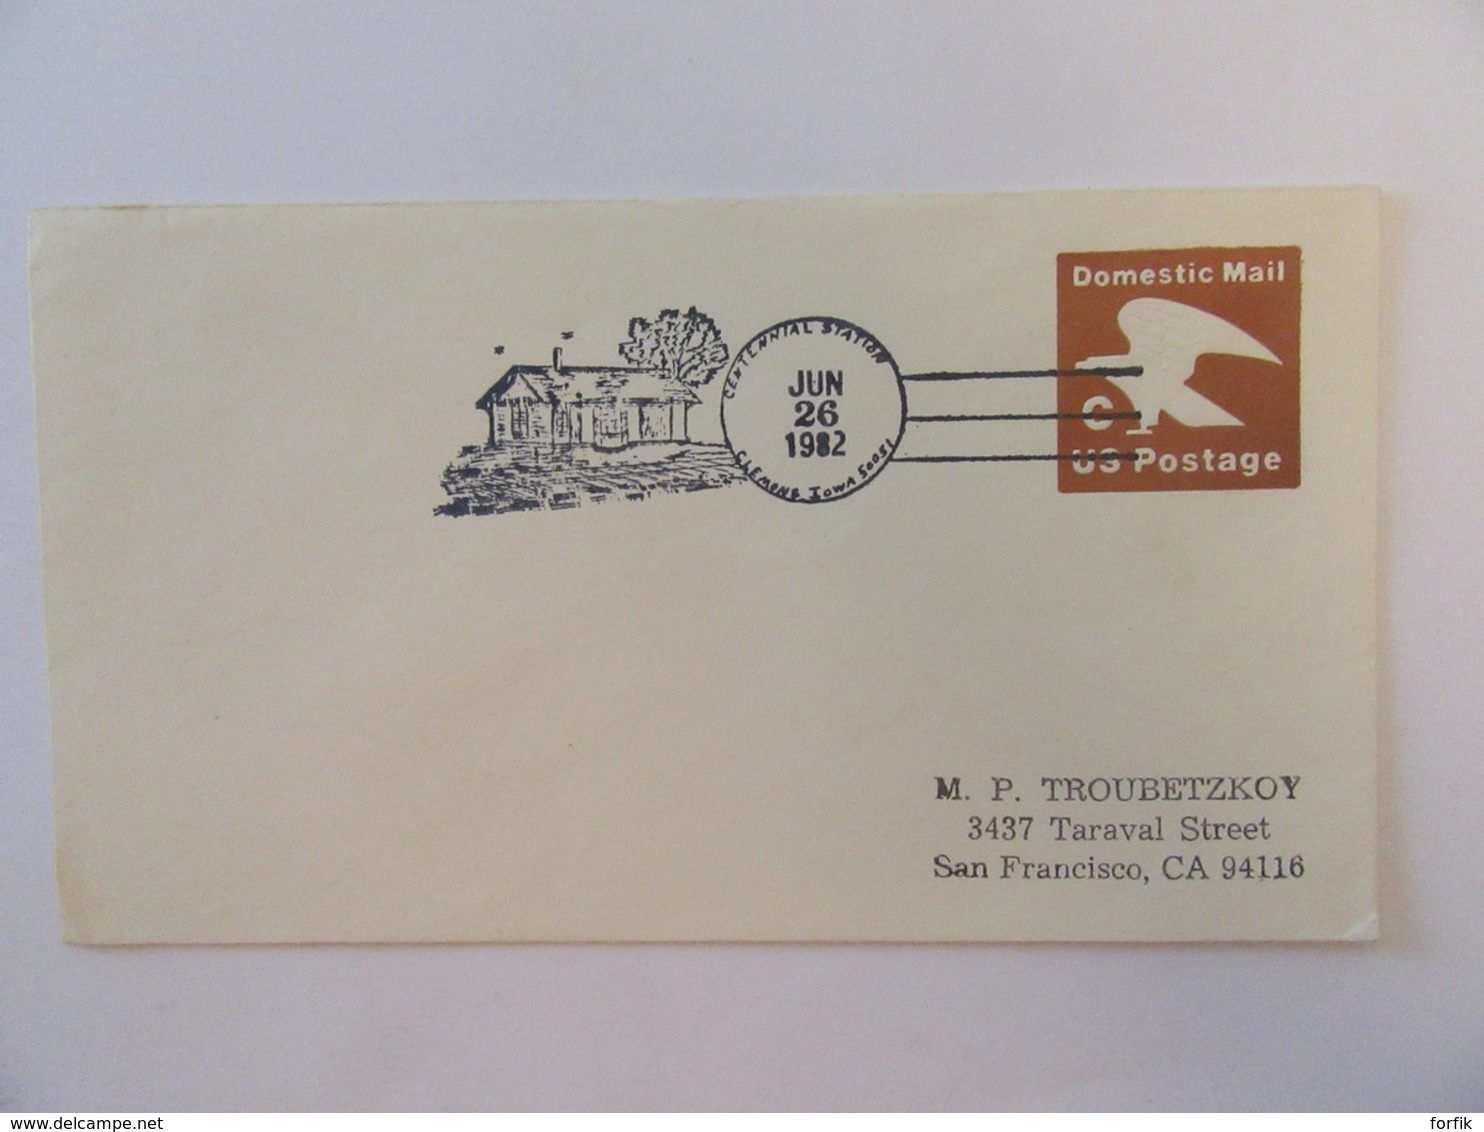 Etats-Unis / USA - 8 Entiers postaux dont belles oblitérations philatéliques (Log Jam Centennial) - Années 1980